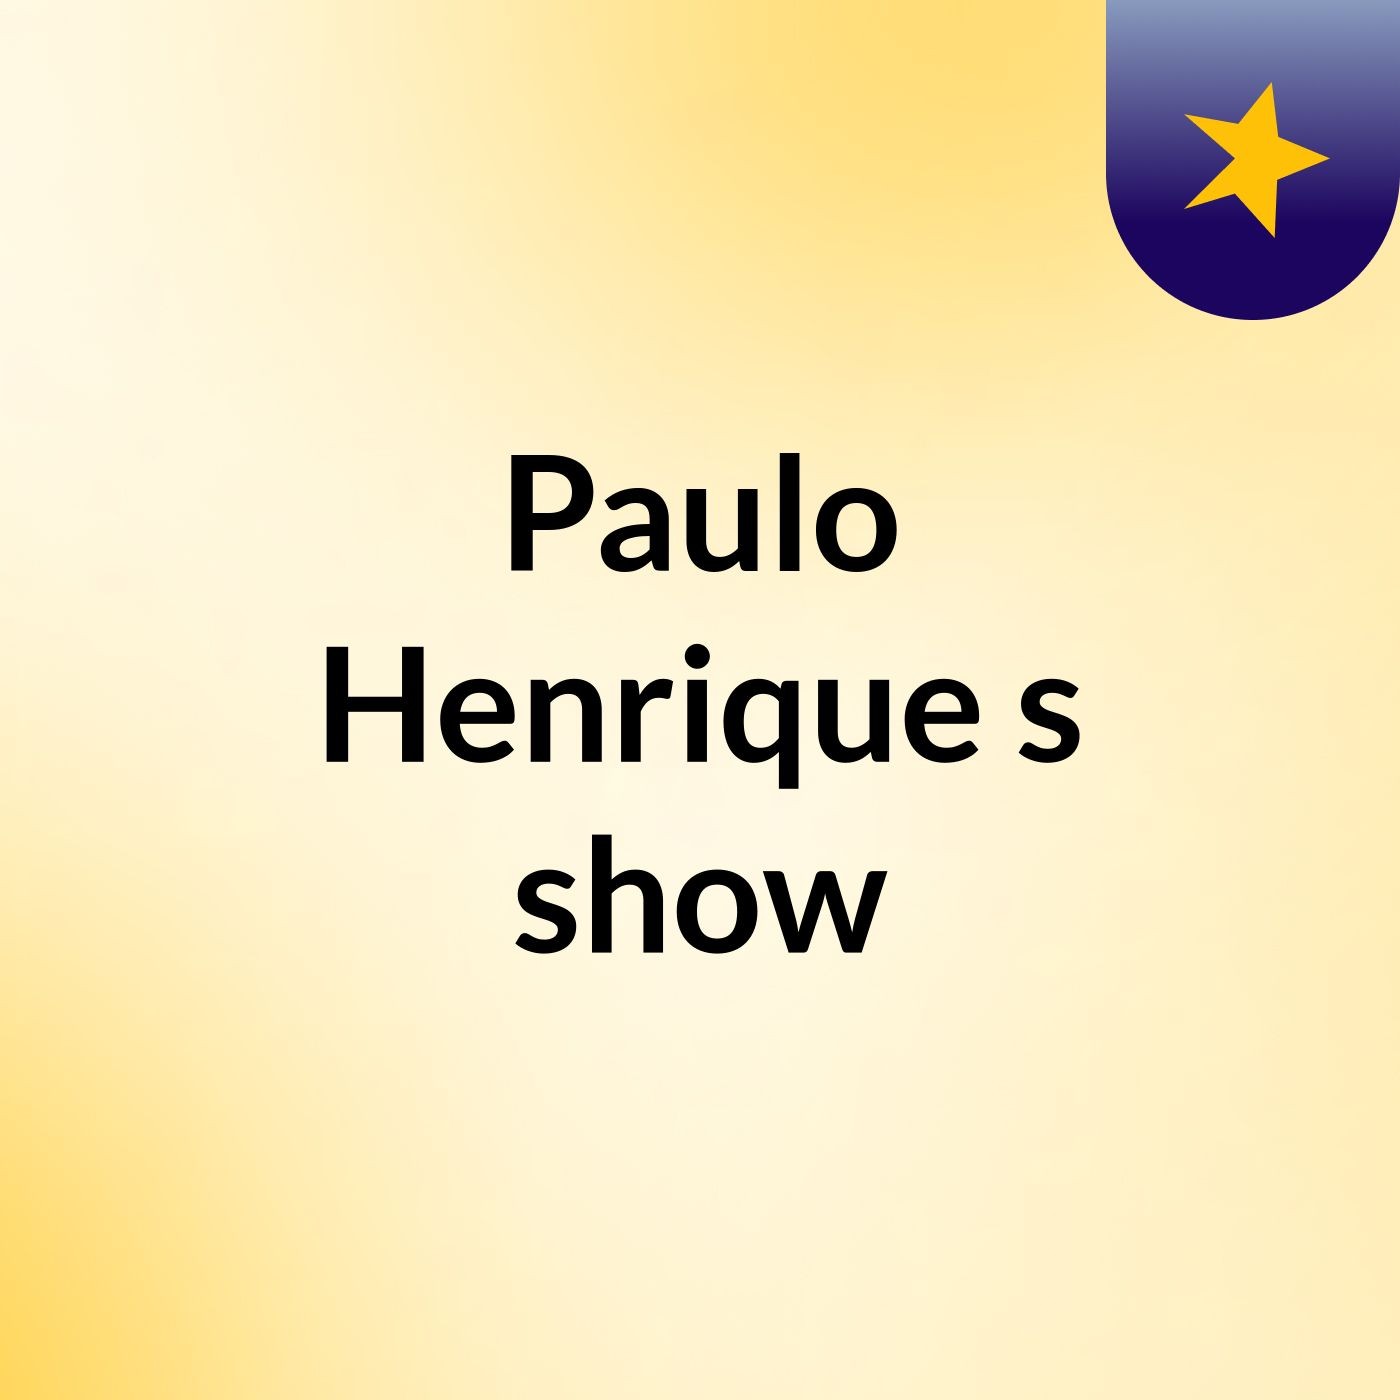 Paulo Henrique's show